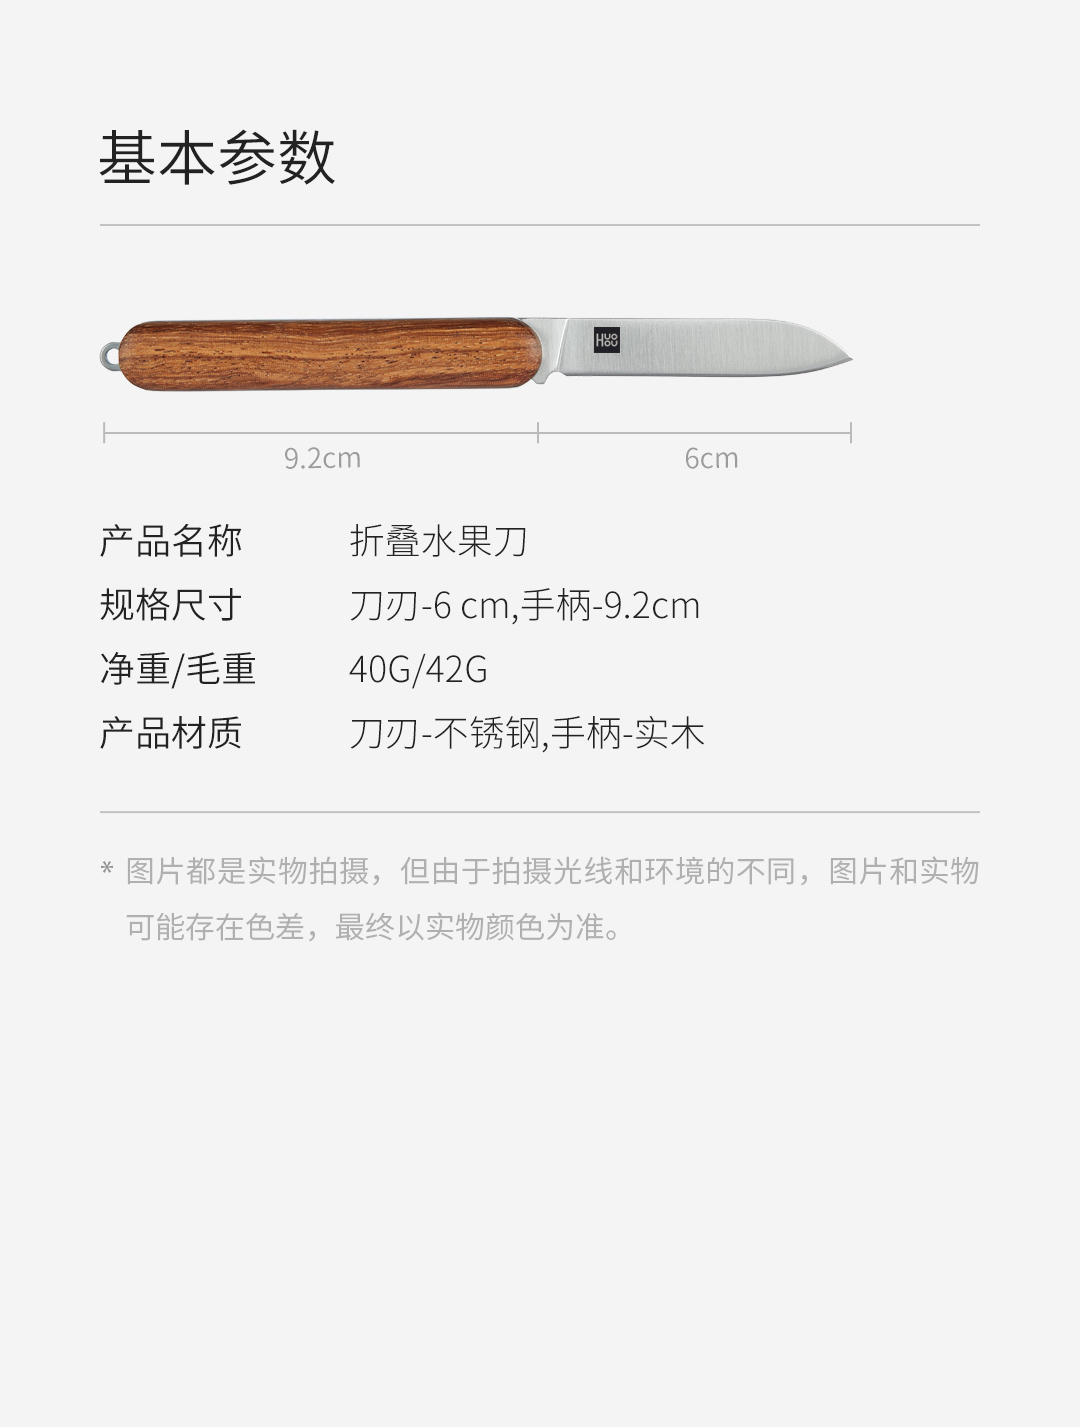 Product_奇妙_火候折叠水果刀52.jpg